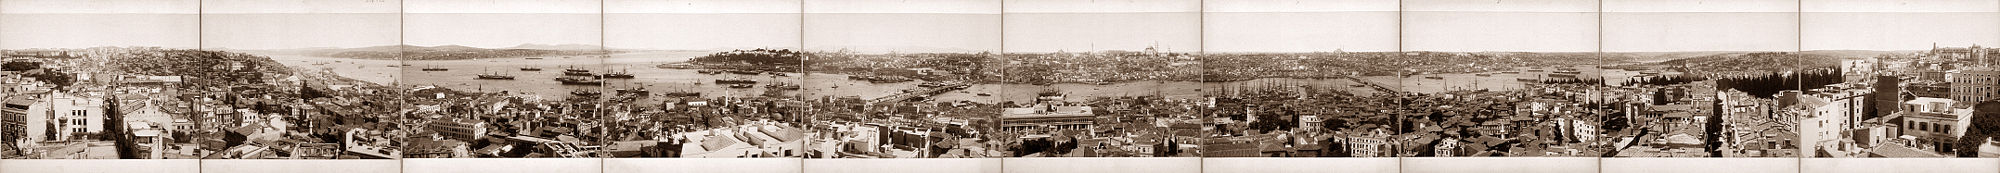 Panorama-Ansicht Istanbuls vom Galata-Turm aus, um 1890. Links der Nordosten, im Vordergrund Galata, der Bosporus Richtung Schwarzes Meer, im Hintergrund das asiatische Ufer; in der Mitte der Bosporus-Ausgang zum Marmarameer, das goldene Horn und die Altstadt; rechts der Westen, im Vordergrund das Hafenviertel.